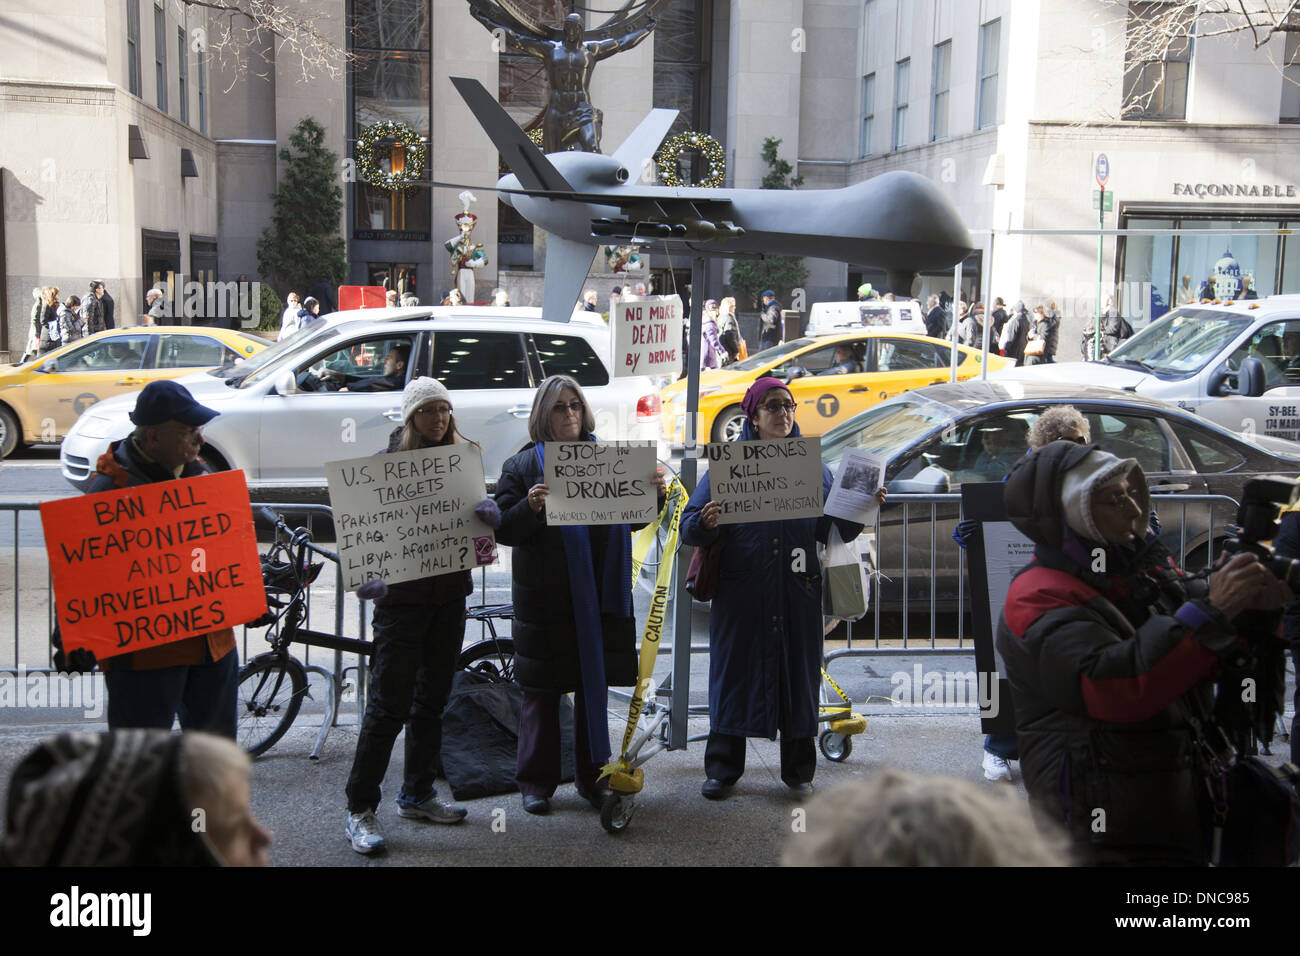 Aktivisten auszusprechen gegen das US-Militär Drohnenprogramm im Ausland viele Zivilisten töten. Stockfoto